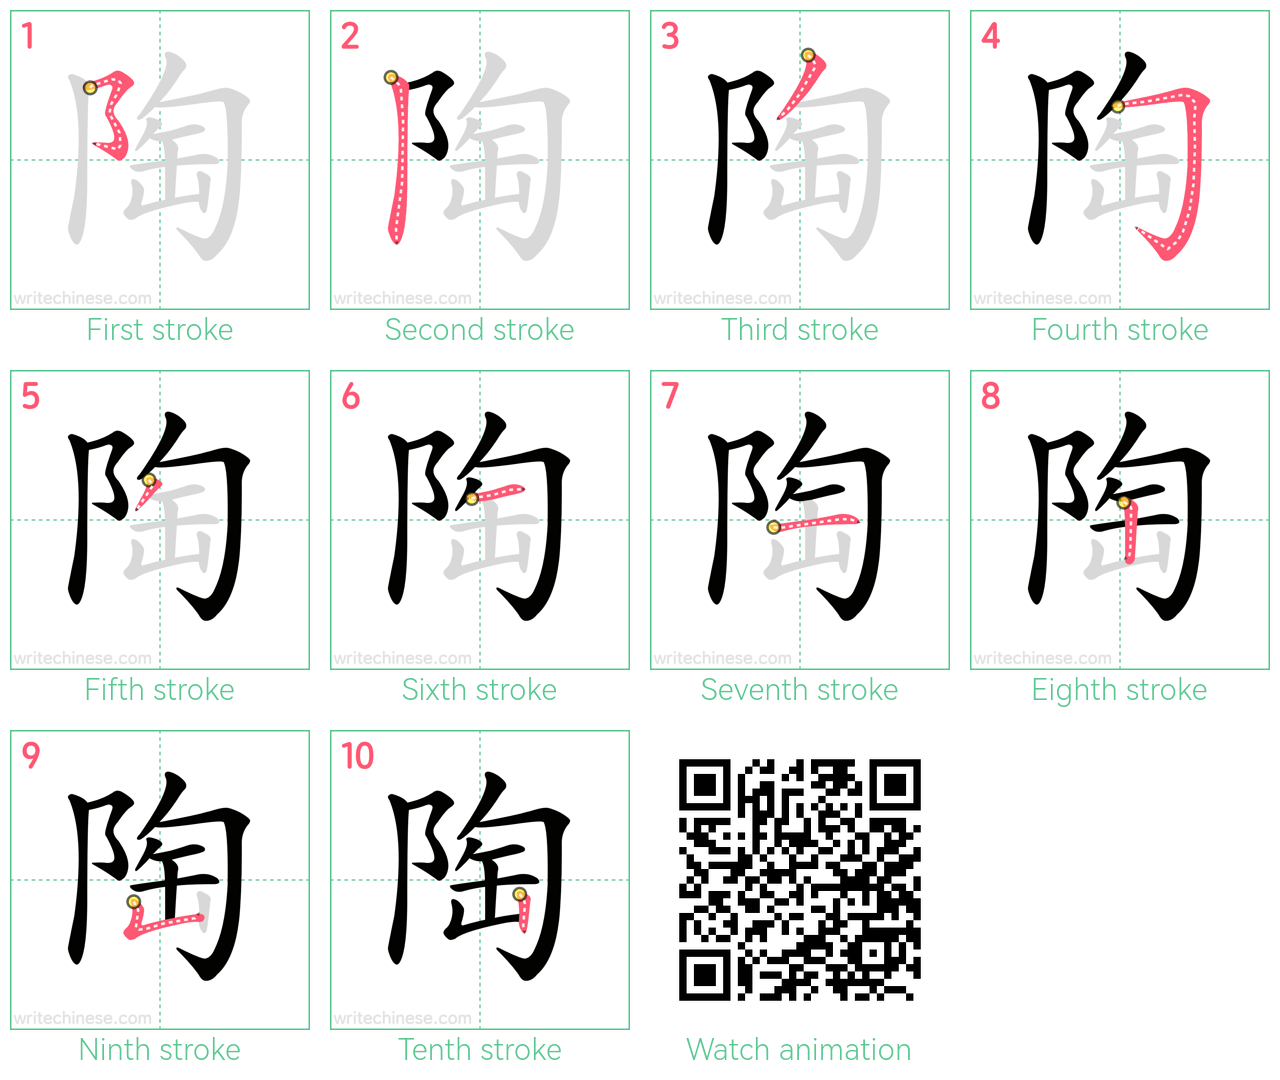 陶 step-by-step stroke order diagrams